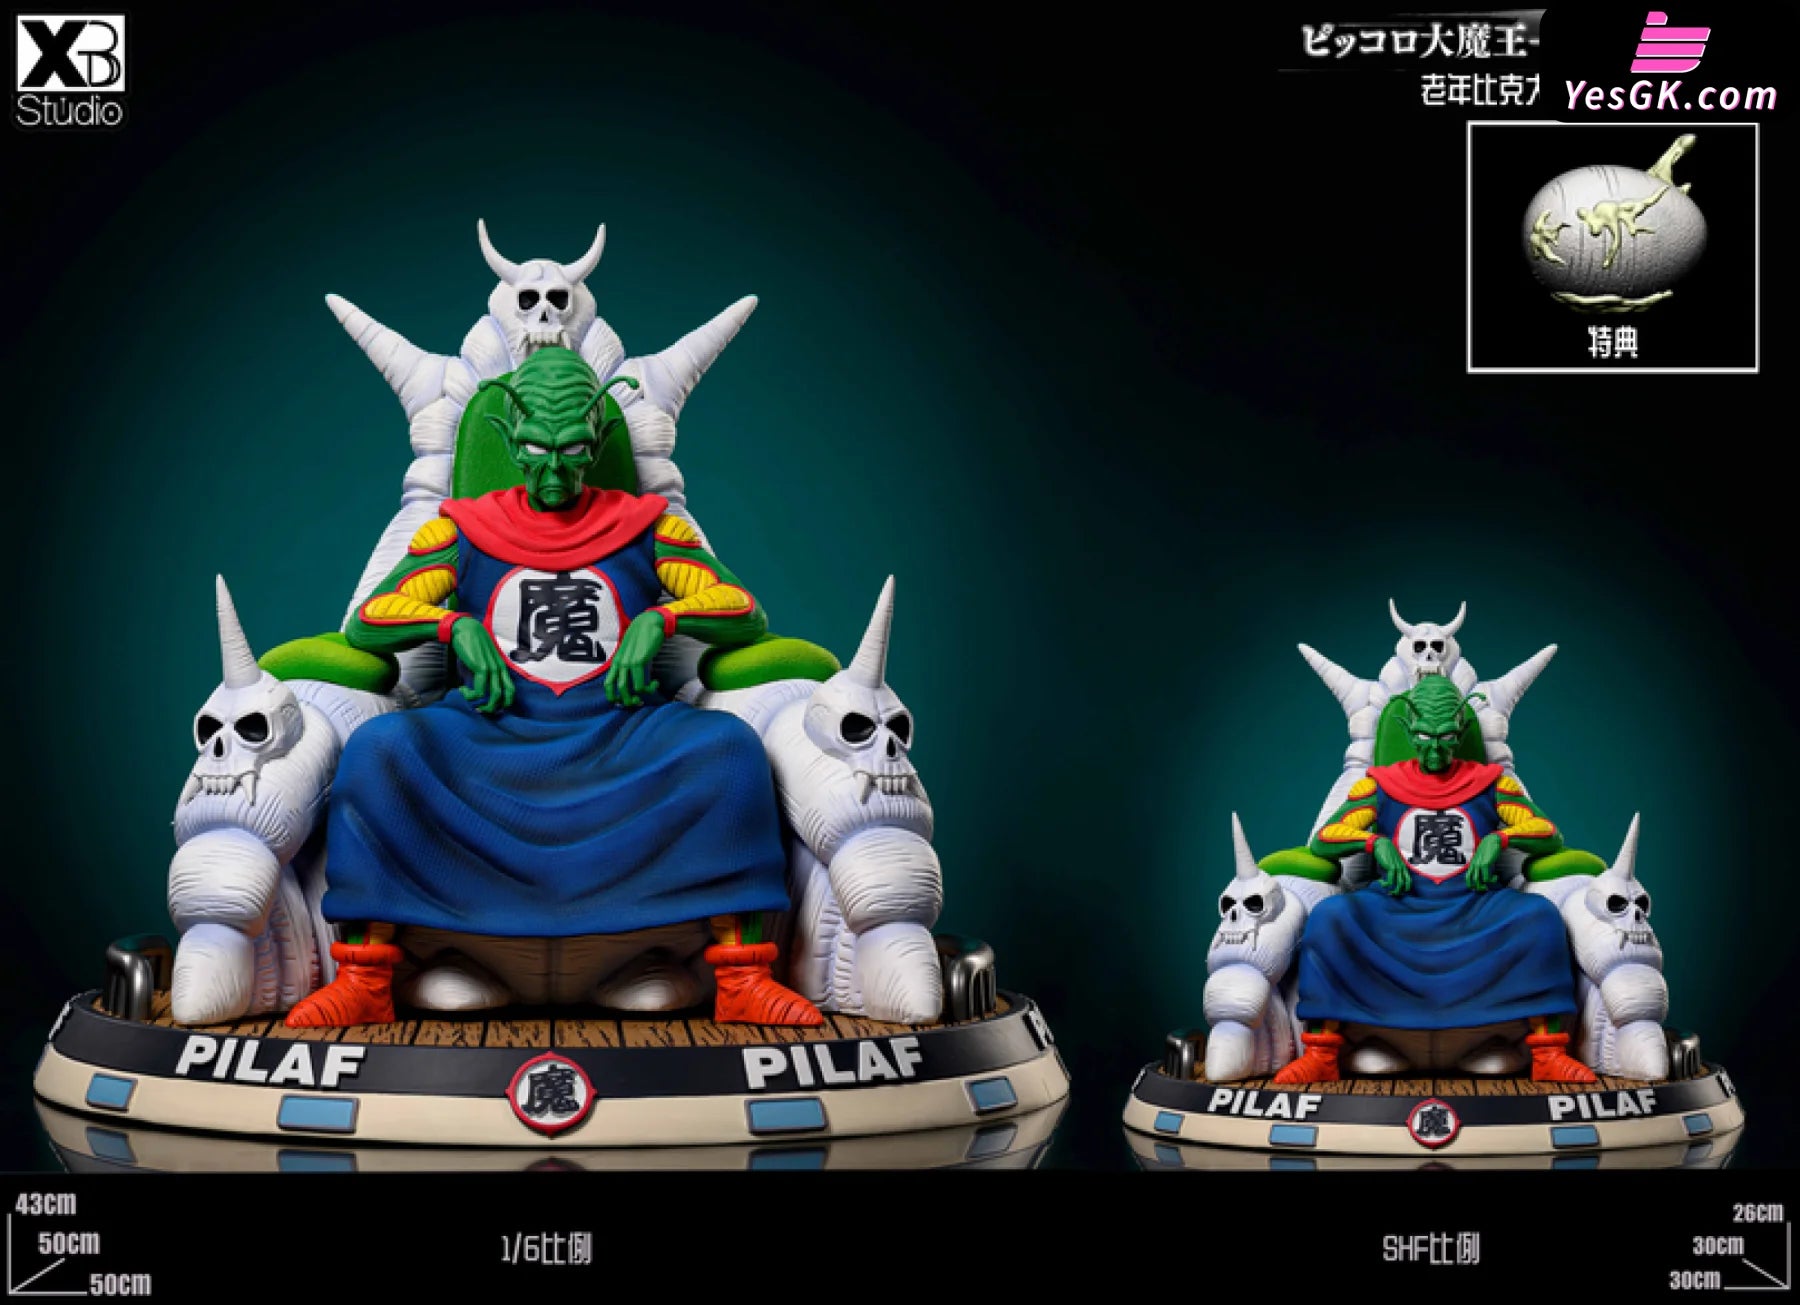 Dragon Ball Piccolo Statue - C Studio [Pre-Order] – YesGK